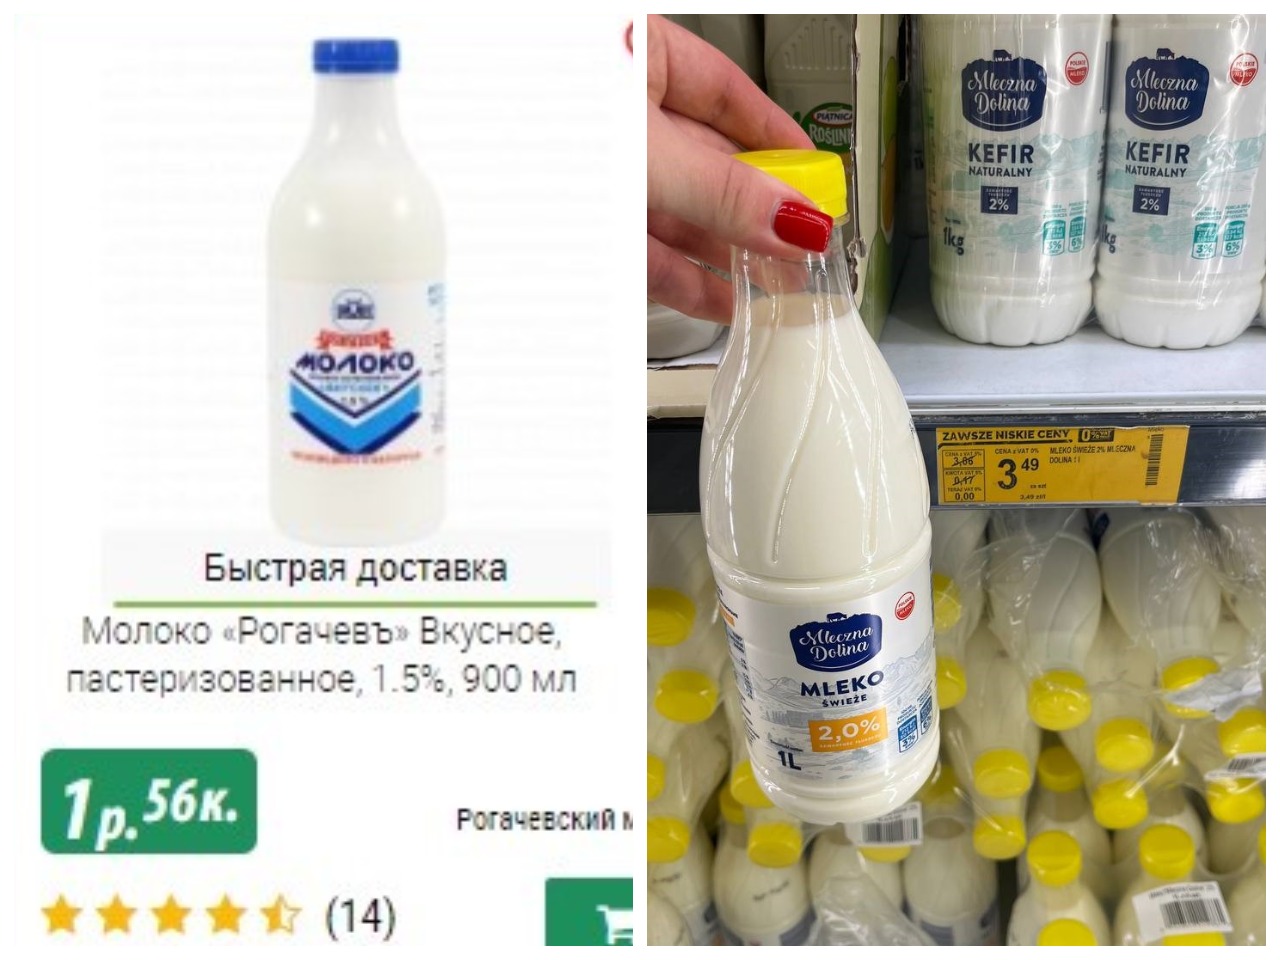 сравнили продукты в Польше и Беларуси